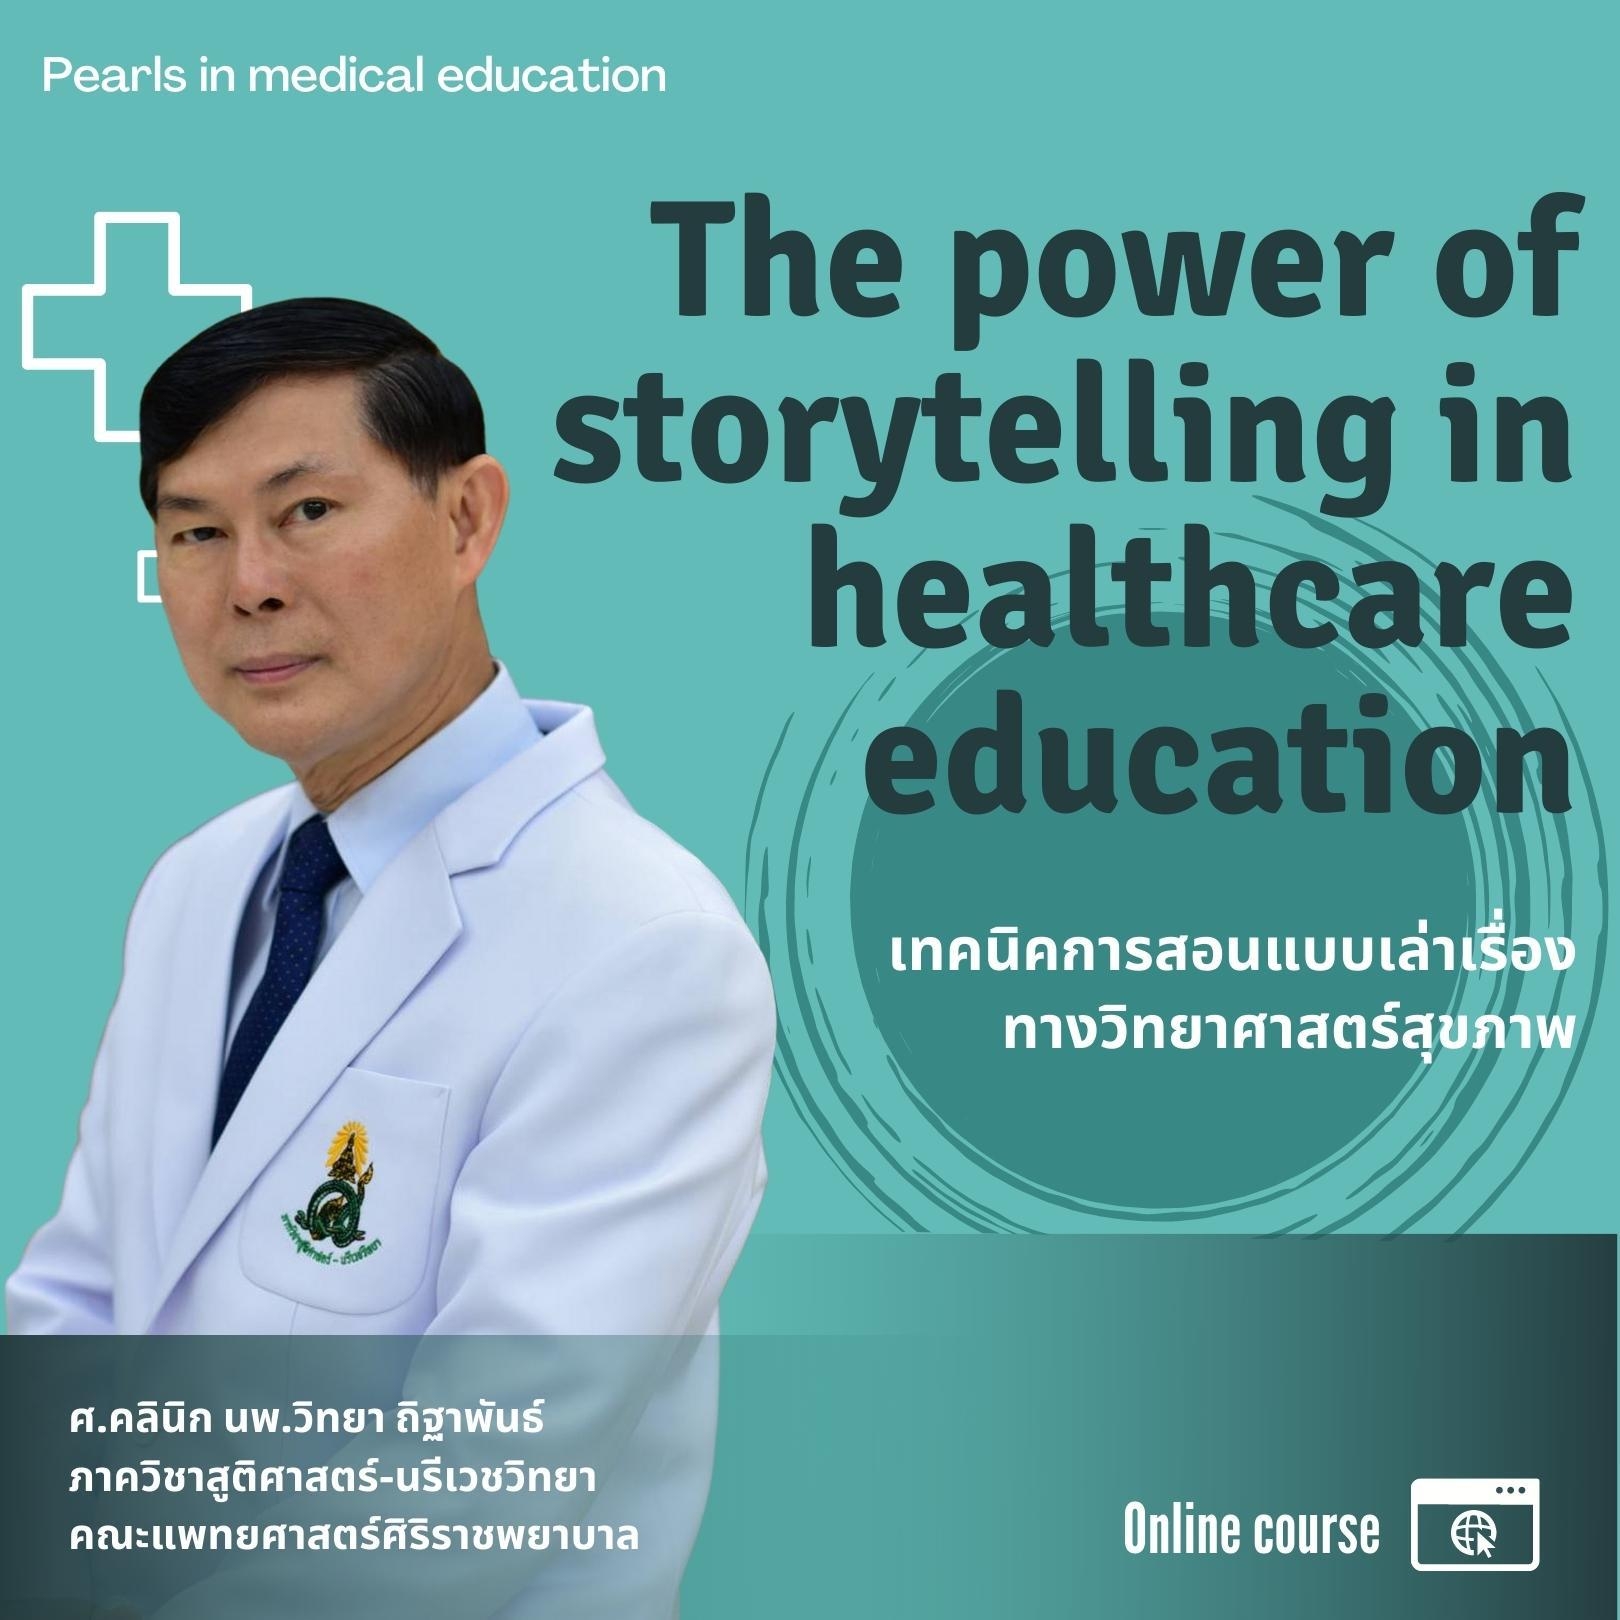 The power of storytelling in healthcare education เทคนิคการสอนแบบเล่าเรื่องทางวิทยาศาสตร์สุขภาพ